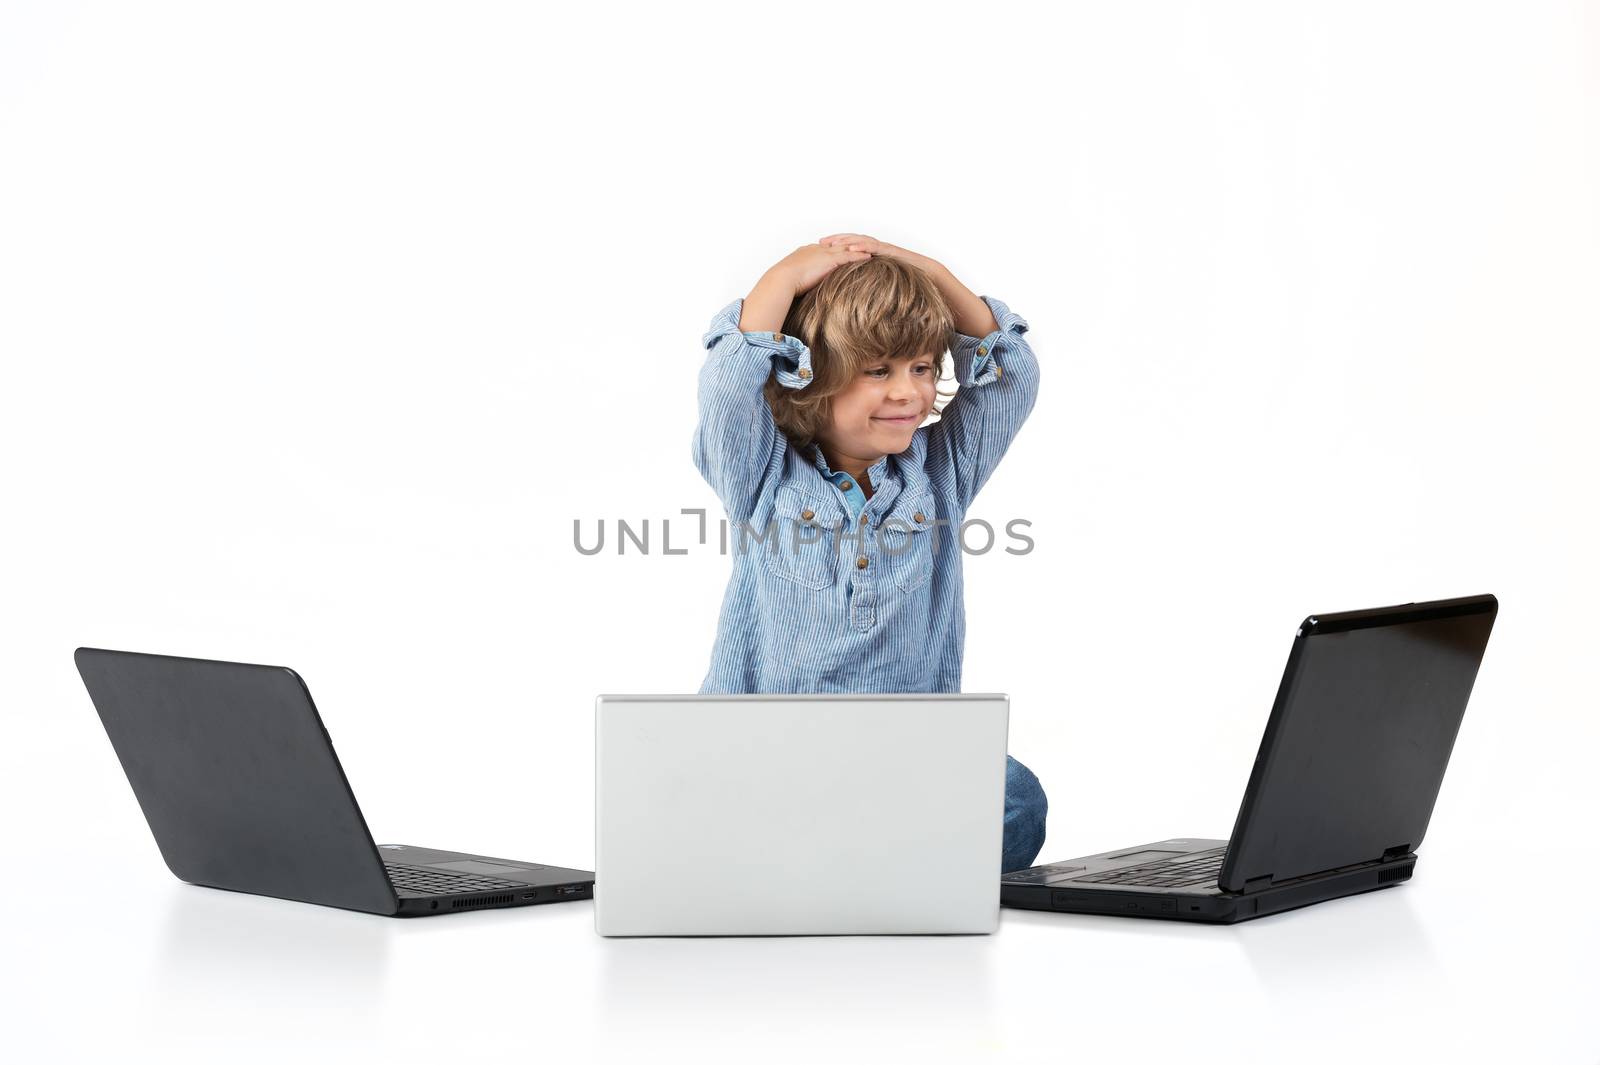 Boy with laptops by kaliantye